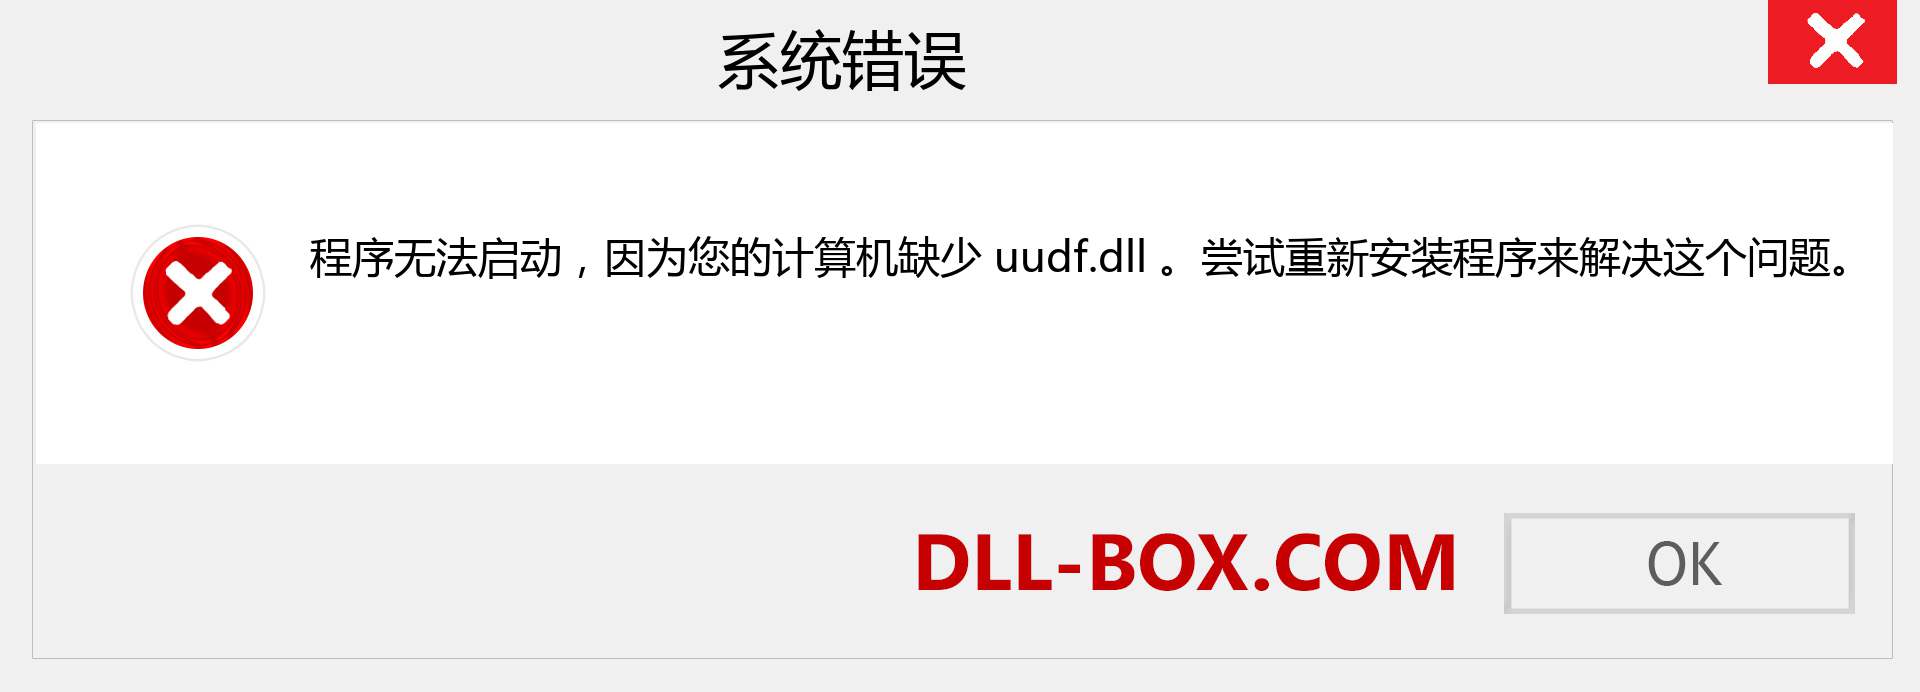 uudf.dll 文件丢失？。 适用于 Windows 7、8、10 的下载 - 修复 Windows、照片、图像上的 uudf dll 丢失错误